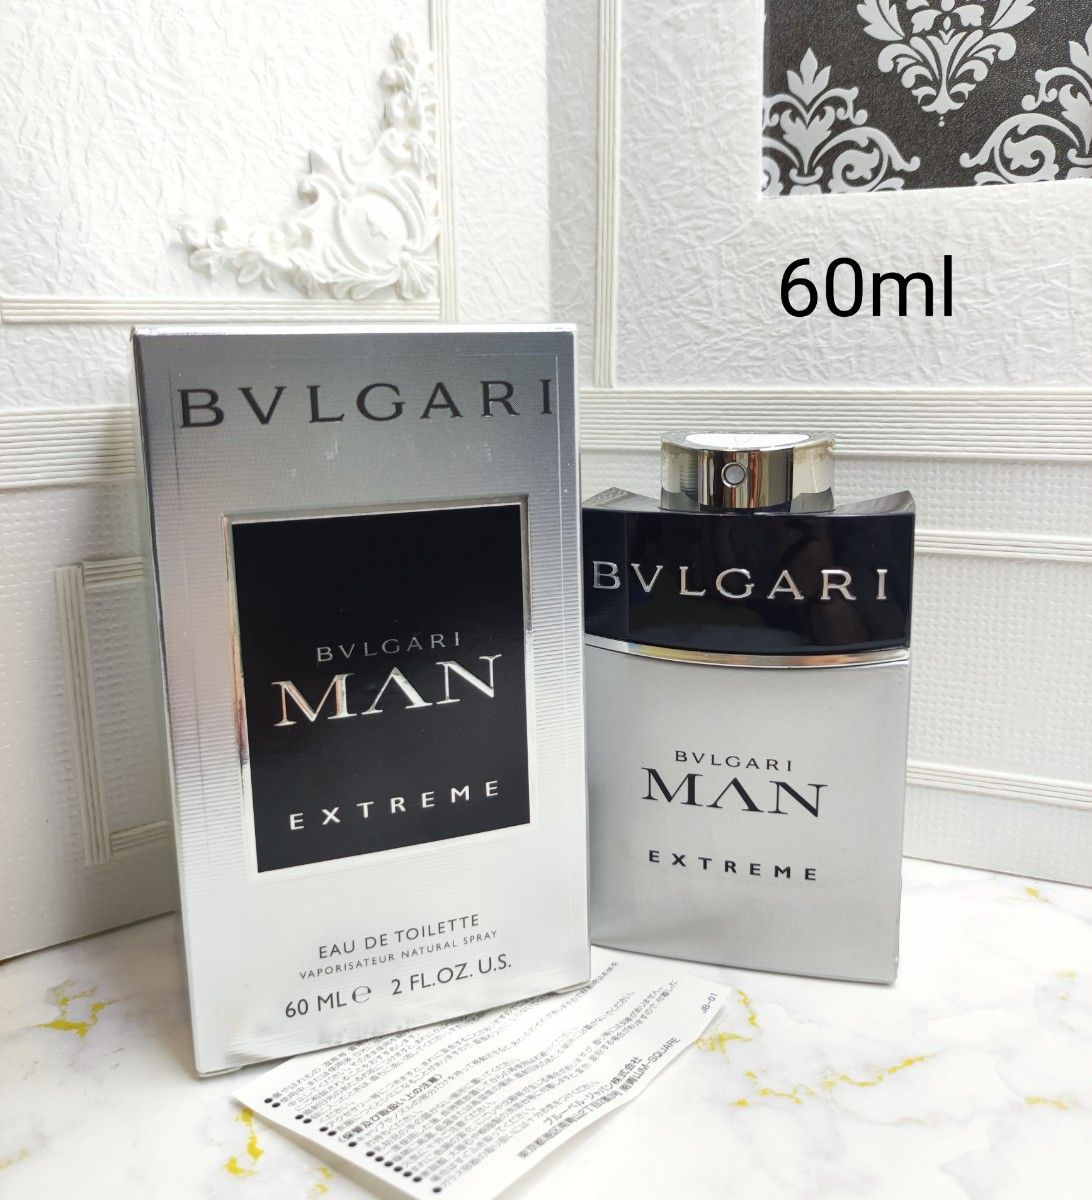 BVLGARI ブルガリ マン エクストリーム 60ml 香水 香水 www